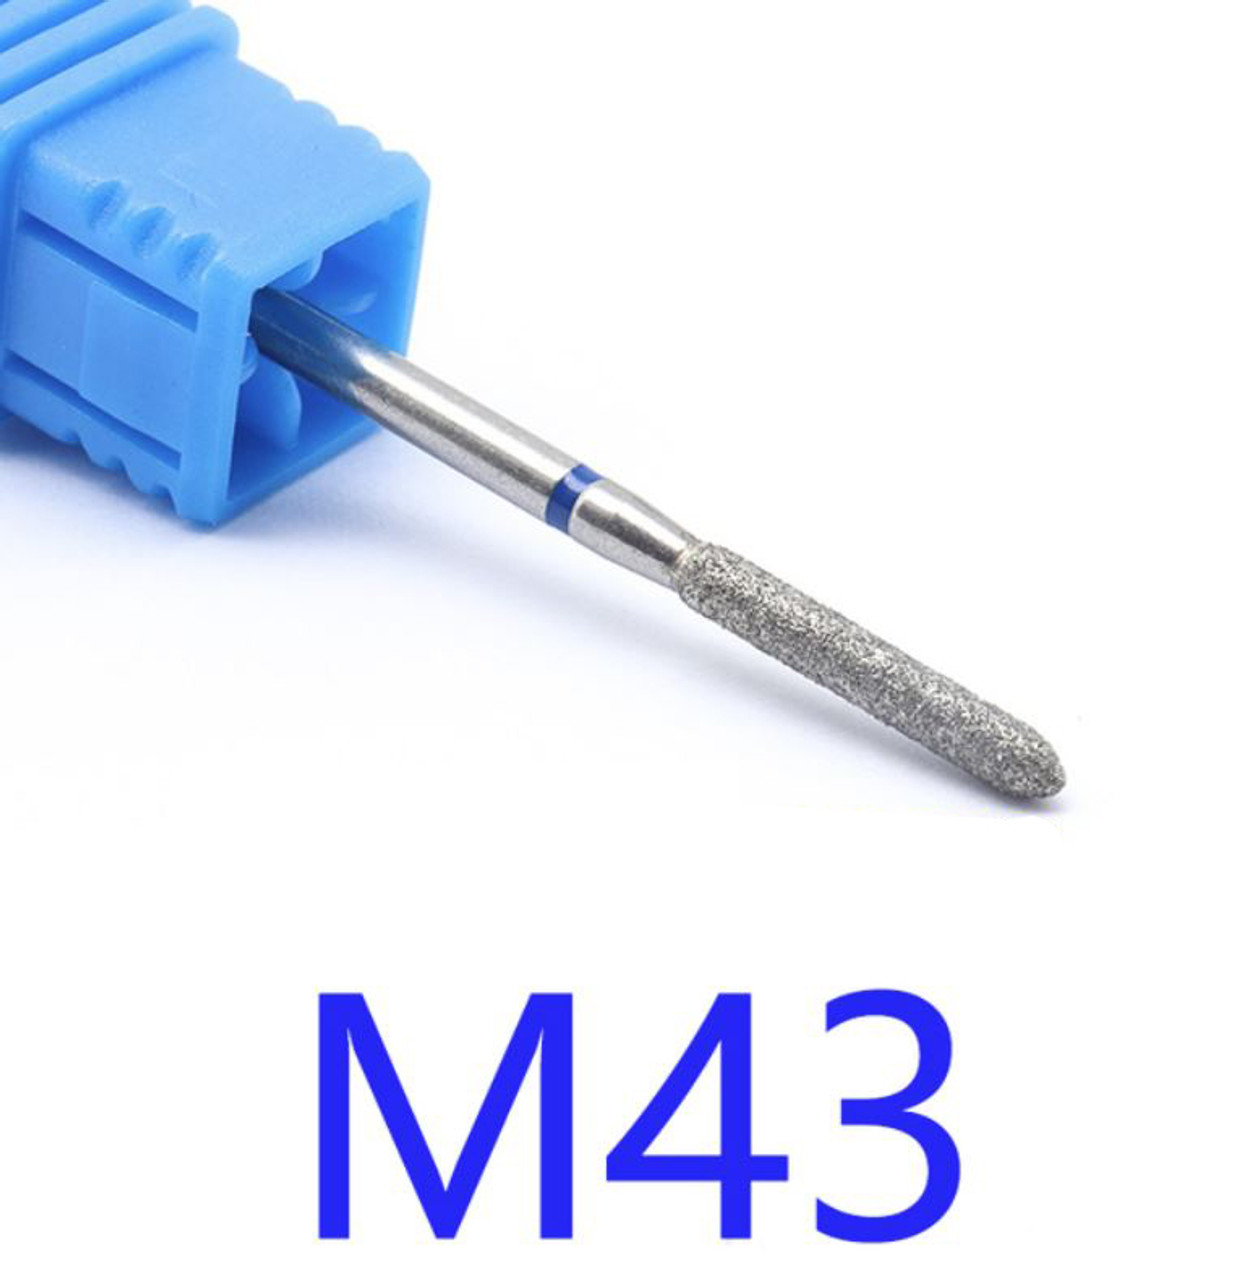 NDi beauty Diamond Drill Bit - 3/32 shank (MEDIUM) - M43